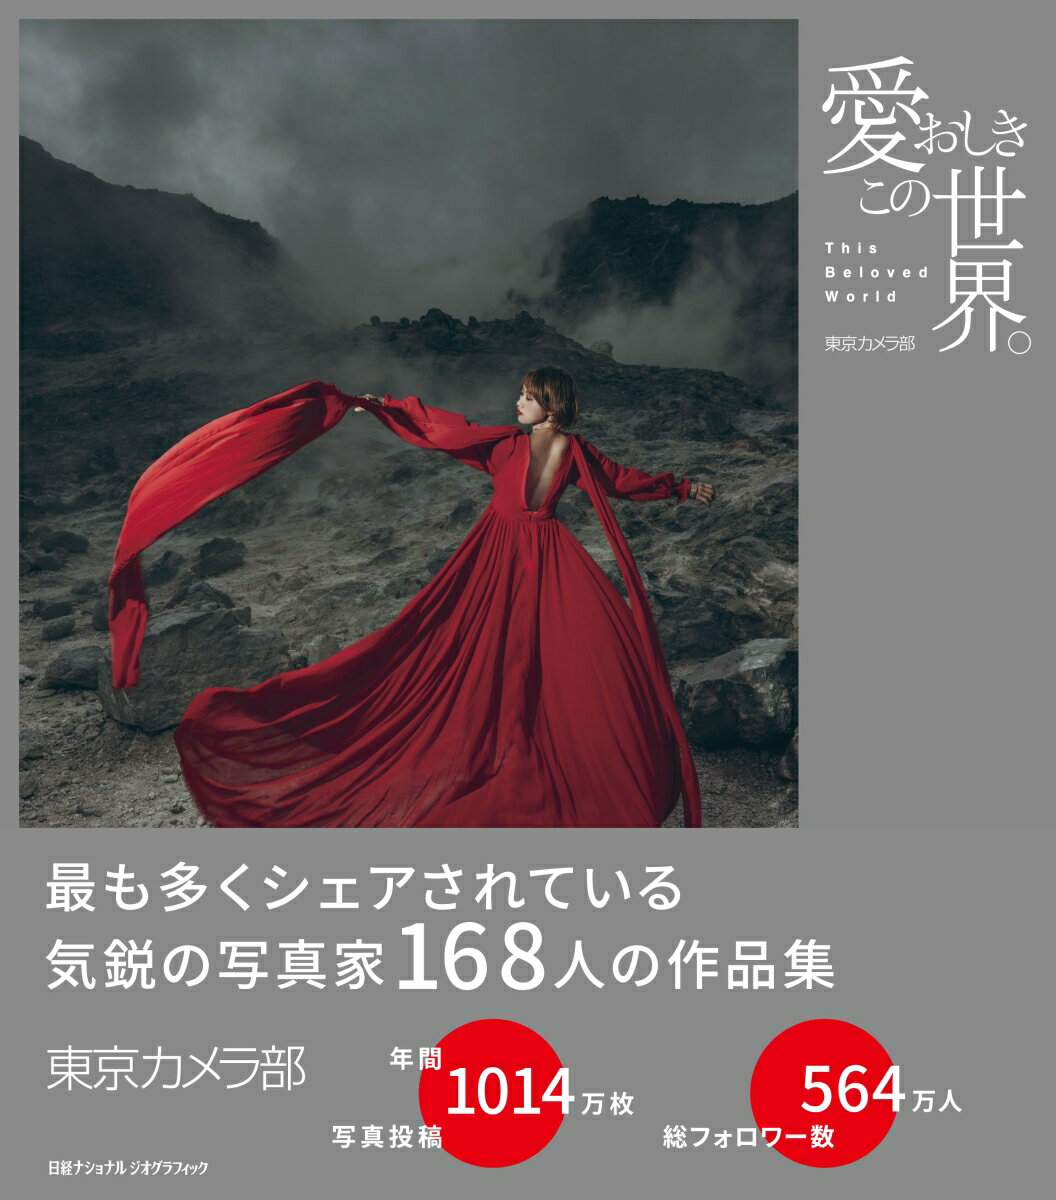 最も多くシェアされている気鋭の写真家１６８人の作品集。東京カメラ部ー年間写真投稿１０１４万枚。総フォロワー数５６４万人。